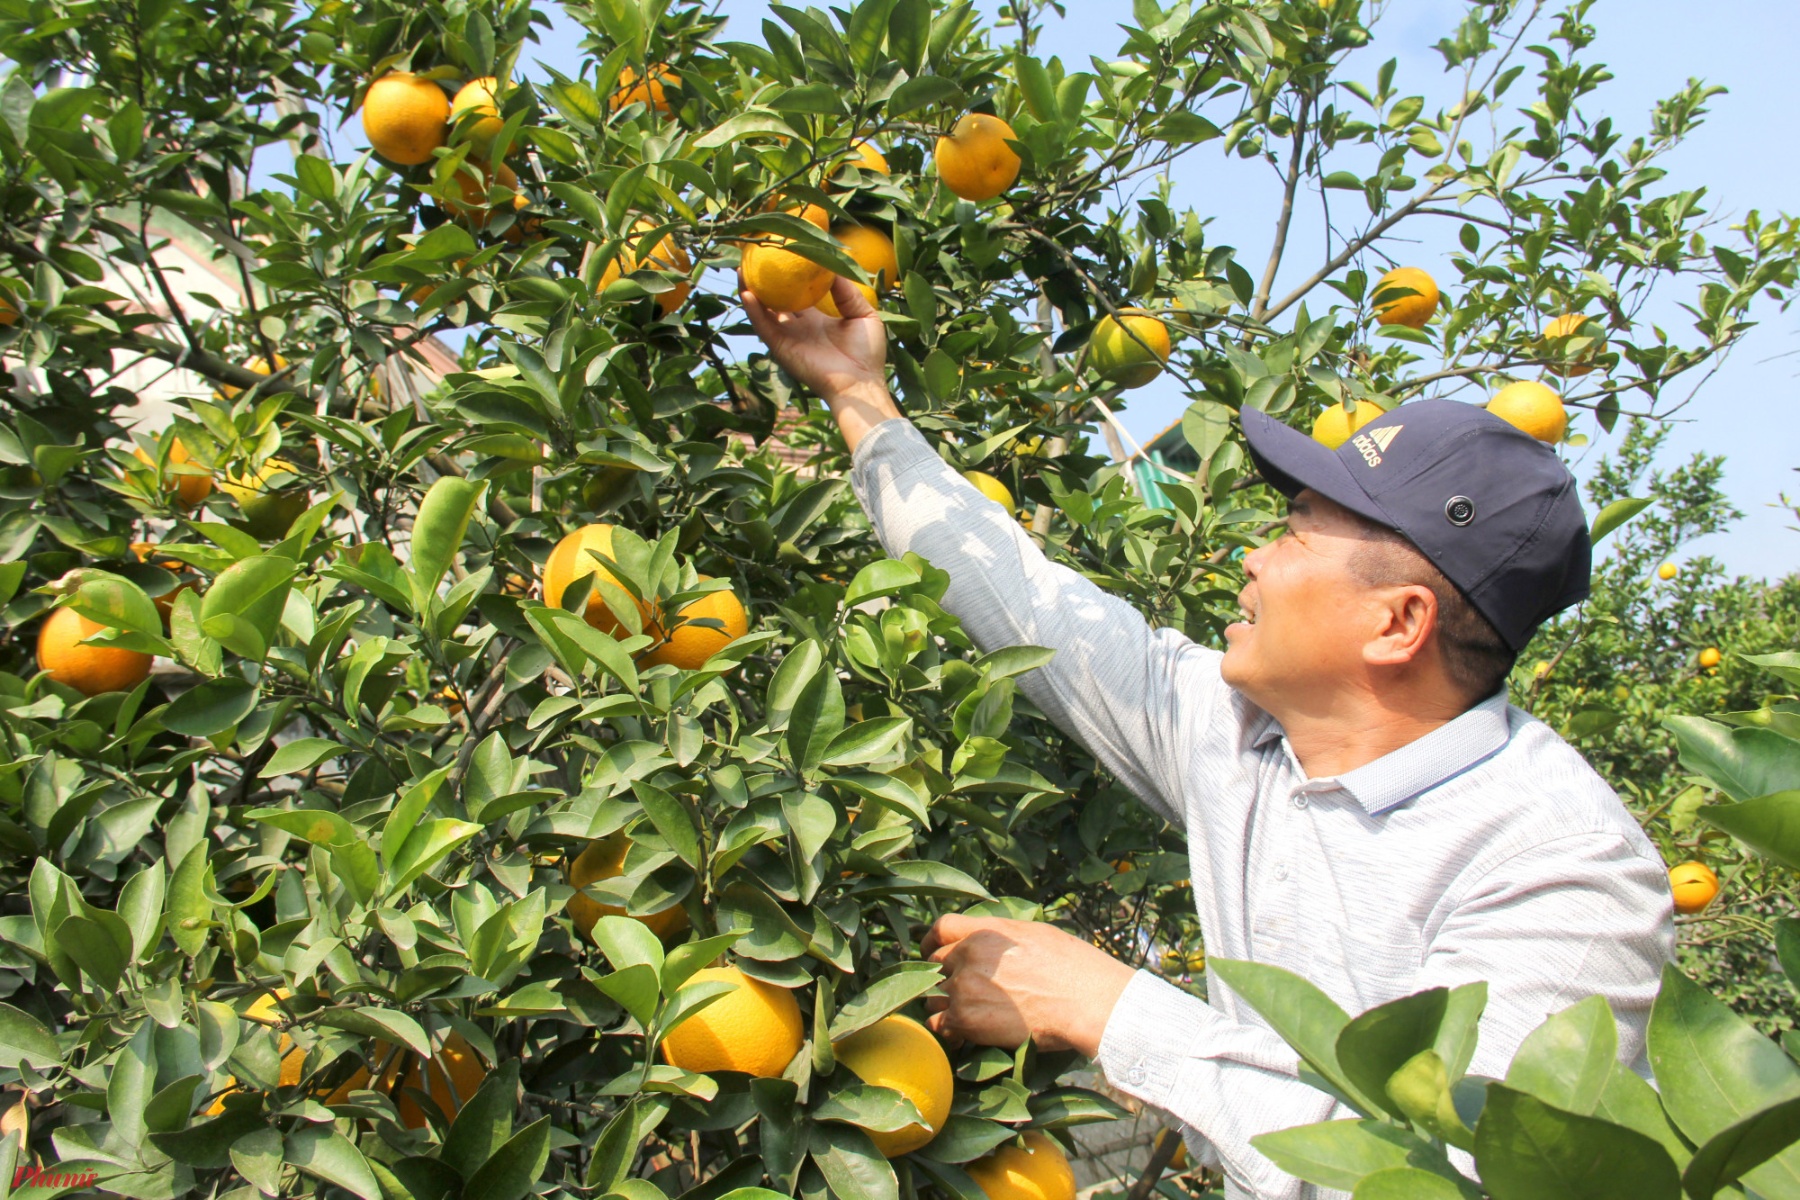 Ông Nguyễn Văn Thọ (trú tại xã Nghi Diên) cho biết, khác với những năm trước, năm nay khách đặt mua cam Xã Đoài từ rất sớm. Gần 1 tuần qua, ông Thọ đã cắt hơn 500 quả cam cho khách.